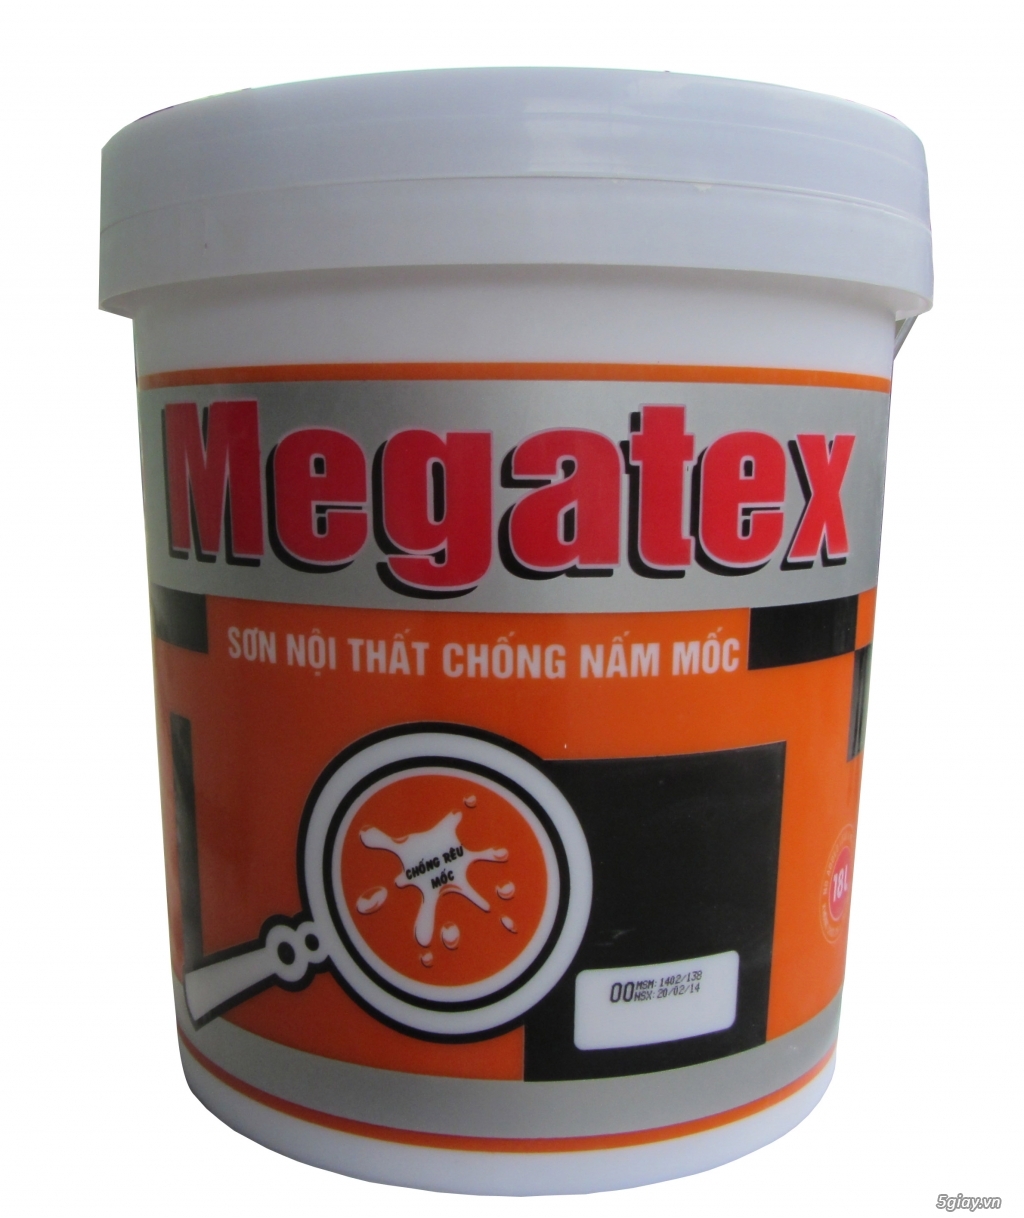 Chuyên cung cấp sơn Megatex hàng chính hãng